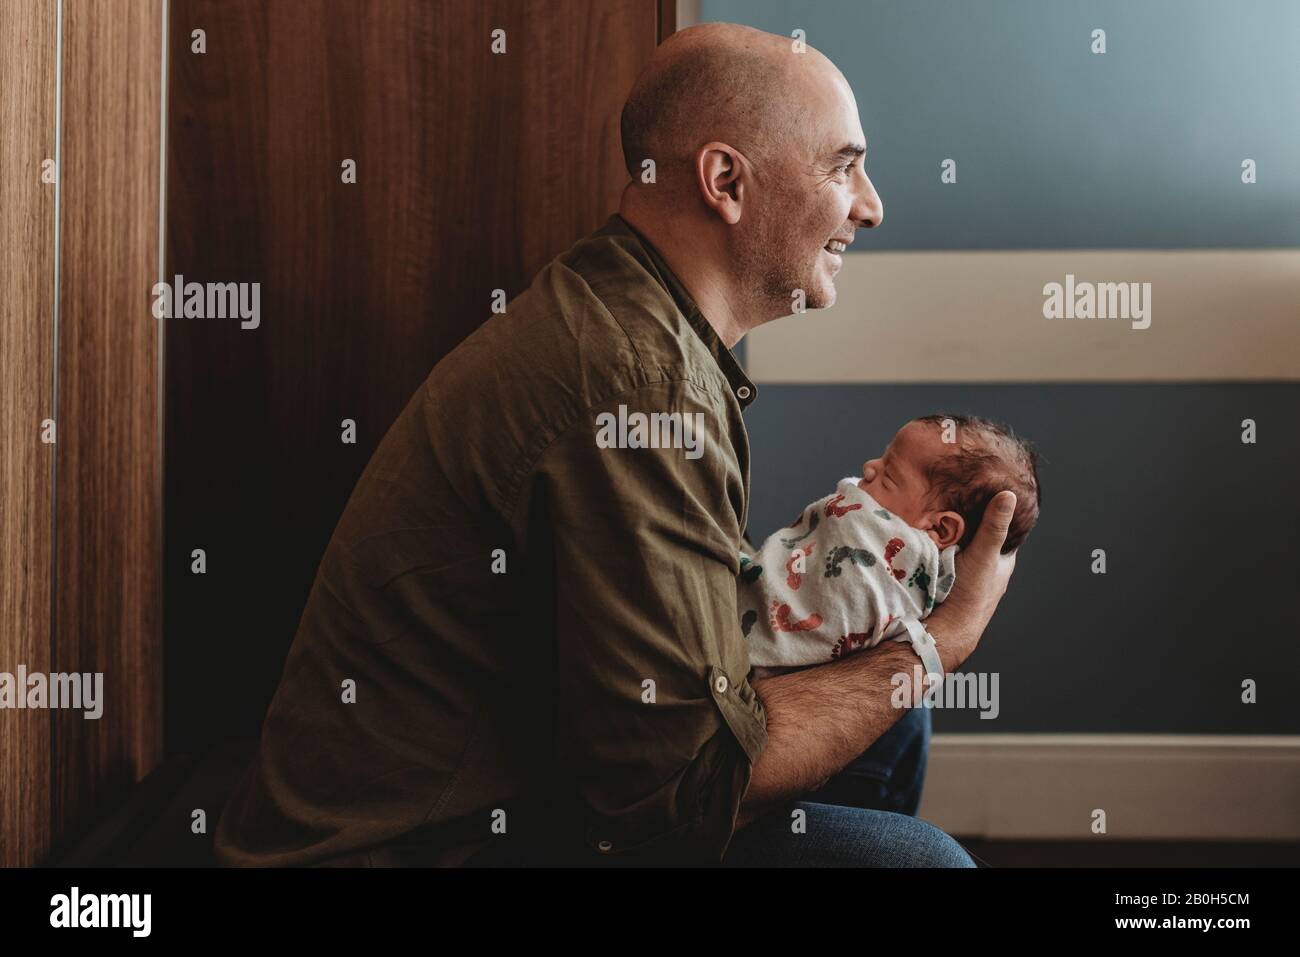 Vue latérale d'un père heureux tenant son nouveau-né à l'hôpital Banque D'Images